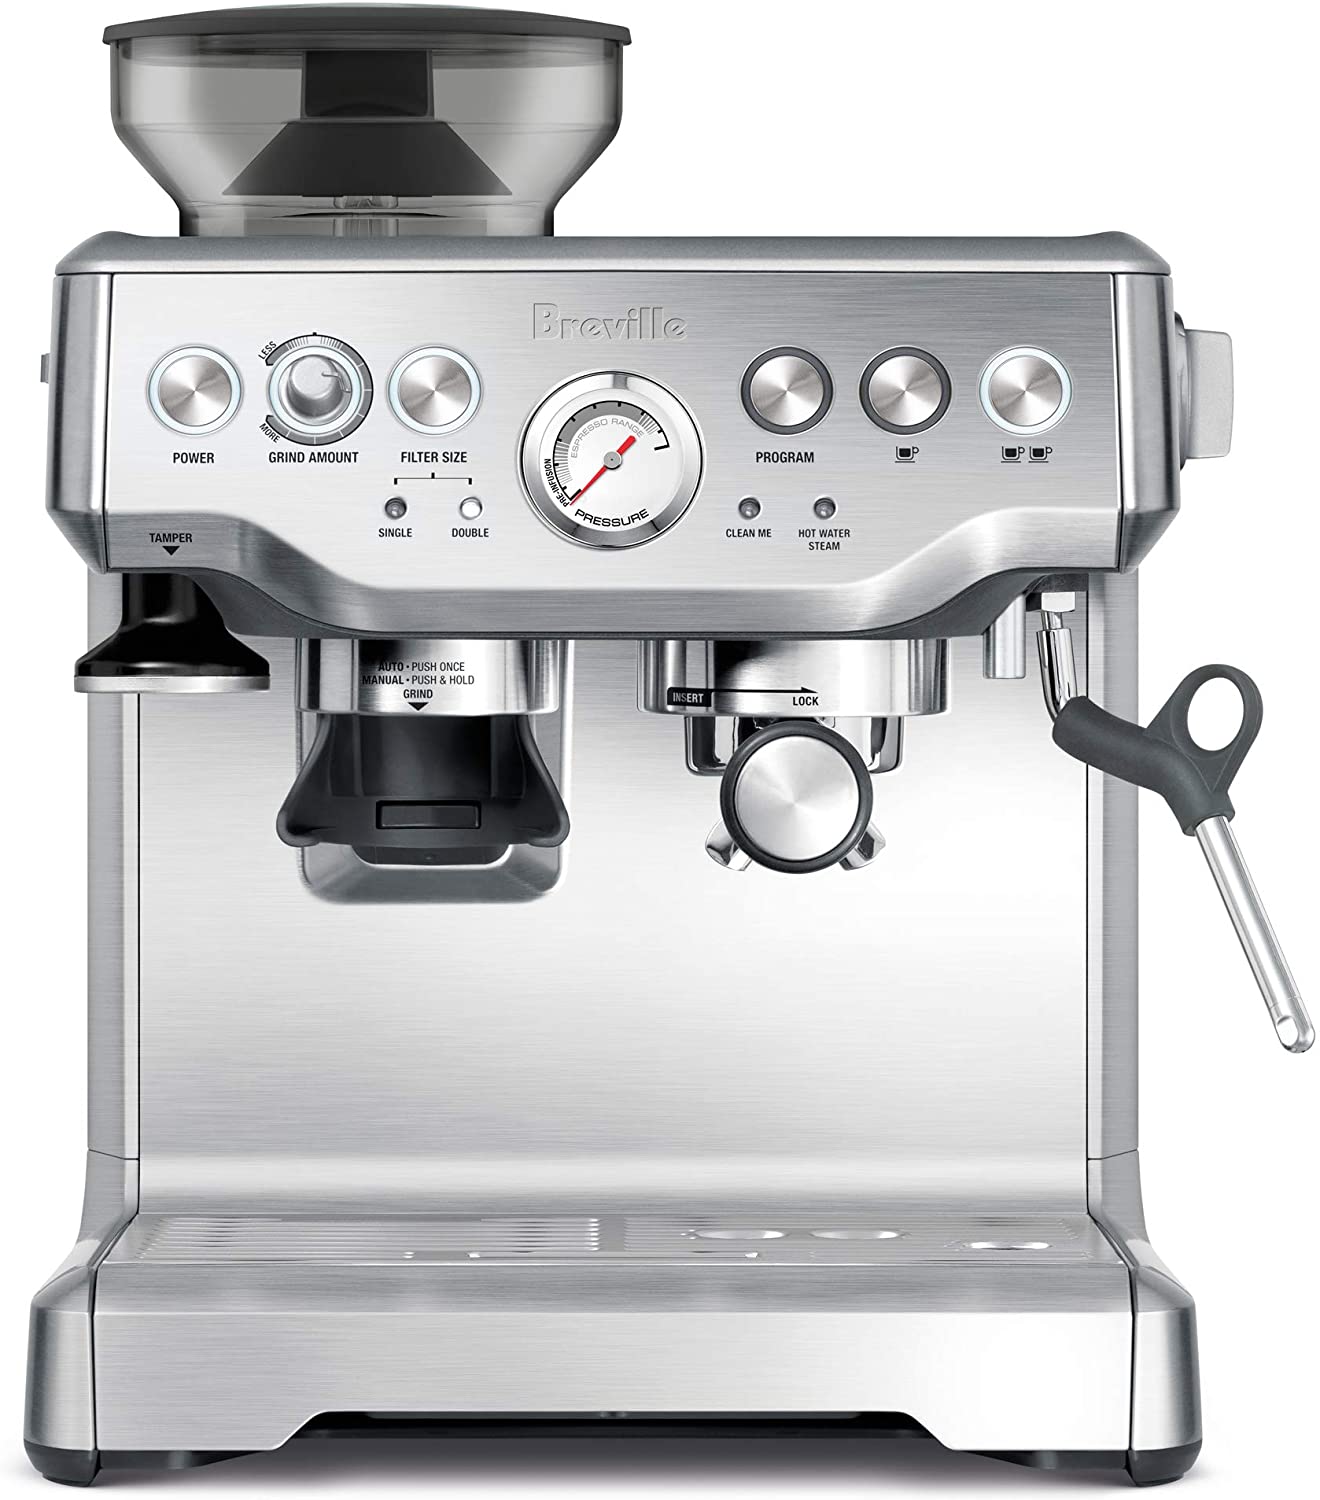 Breville BES870XL Barista Express Espresso Machine